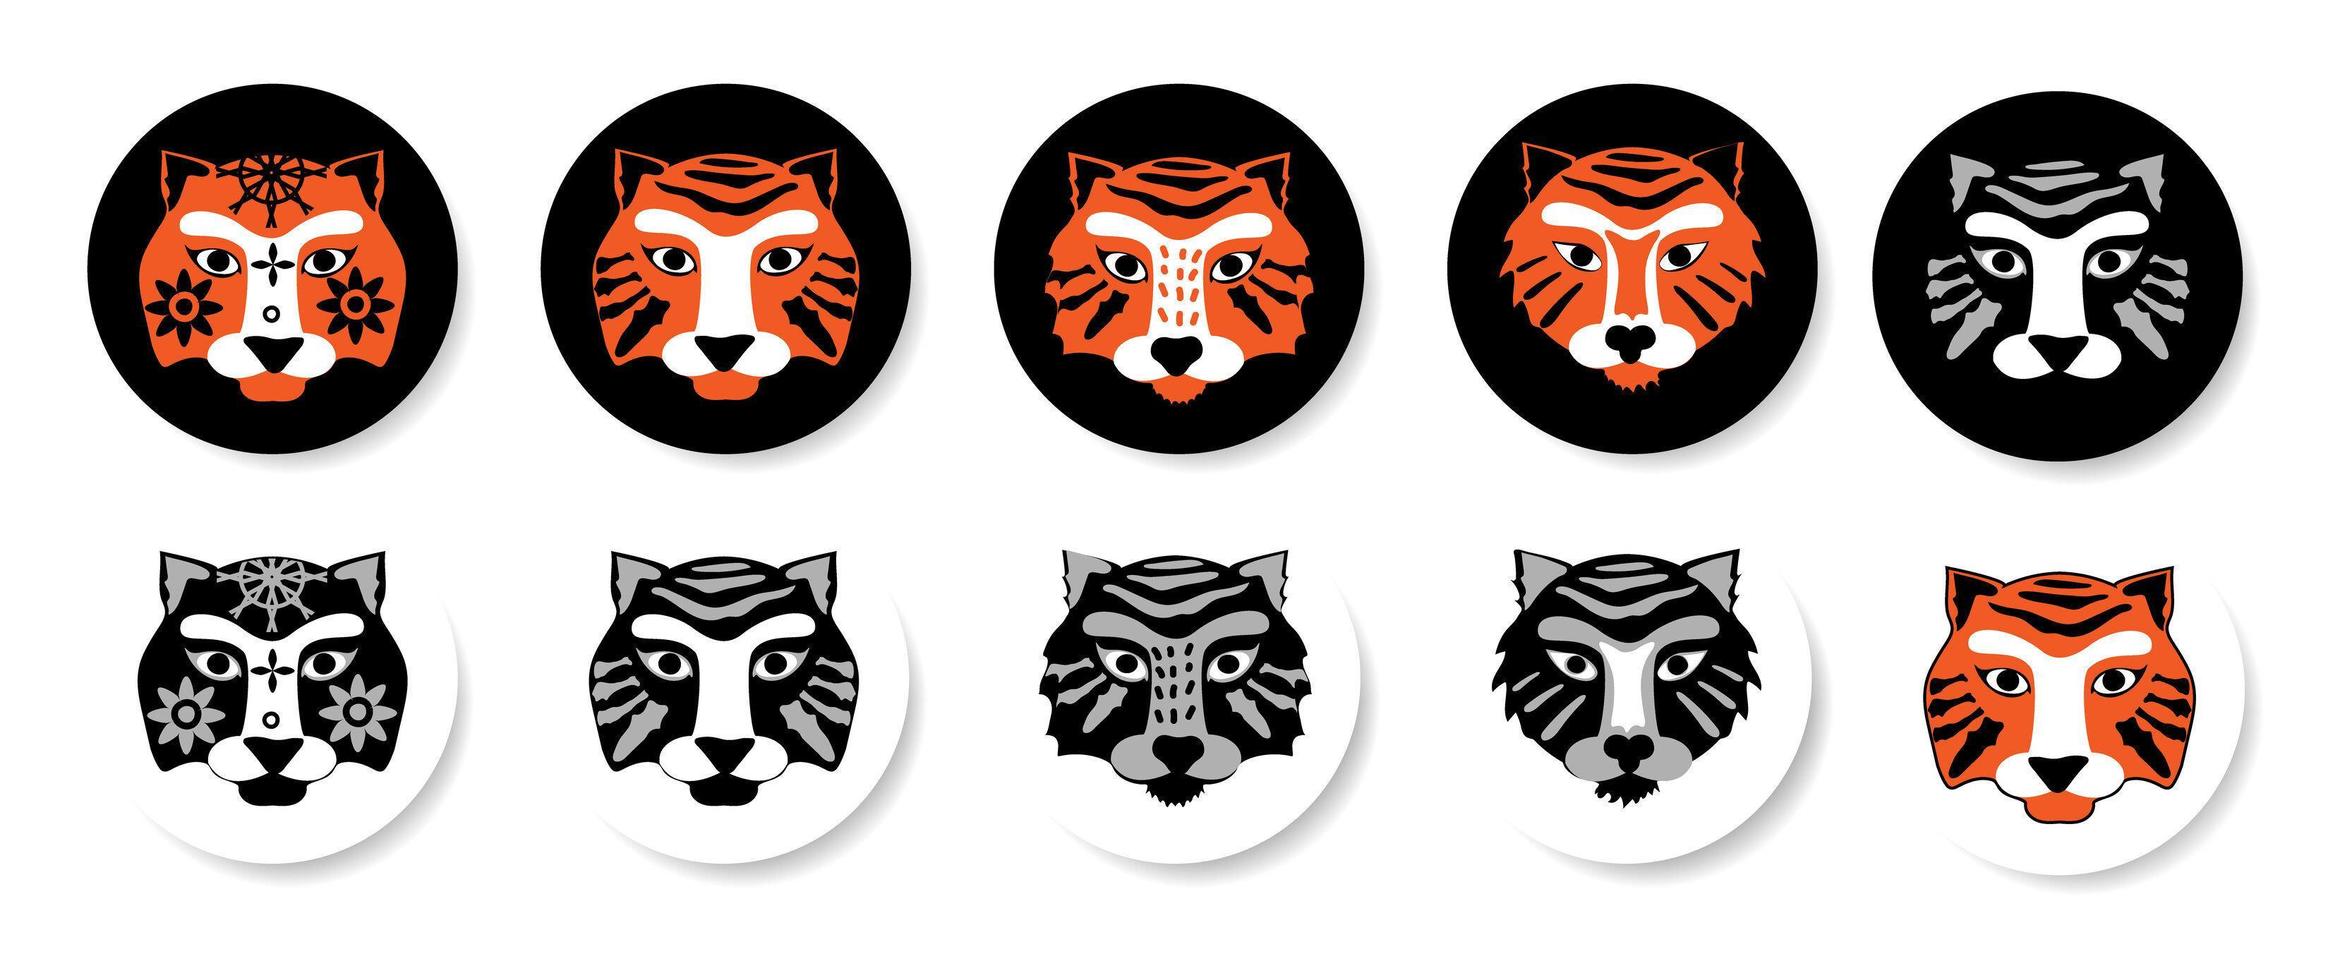 isolé sur fond blanc emblèmes avec des visages de tigre. vecteur dans un style plat. tigres mignons sur un cercle blanc et sur un cercle noir.